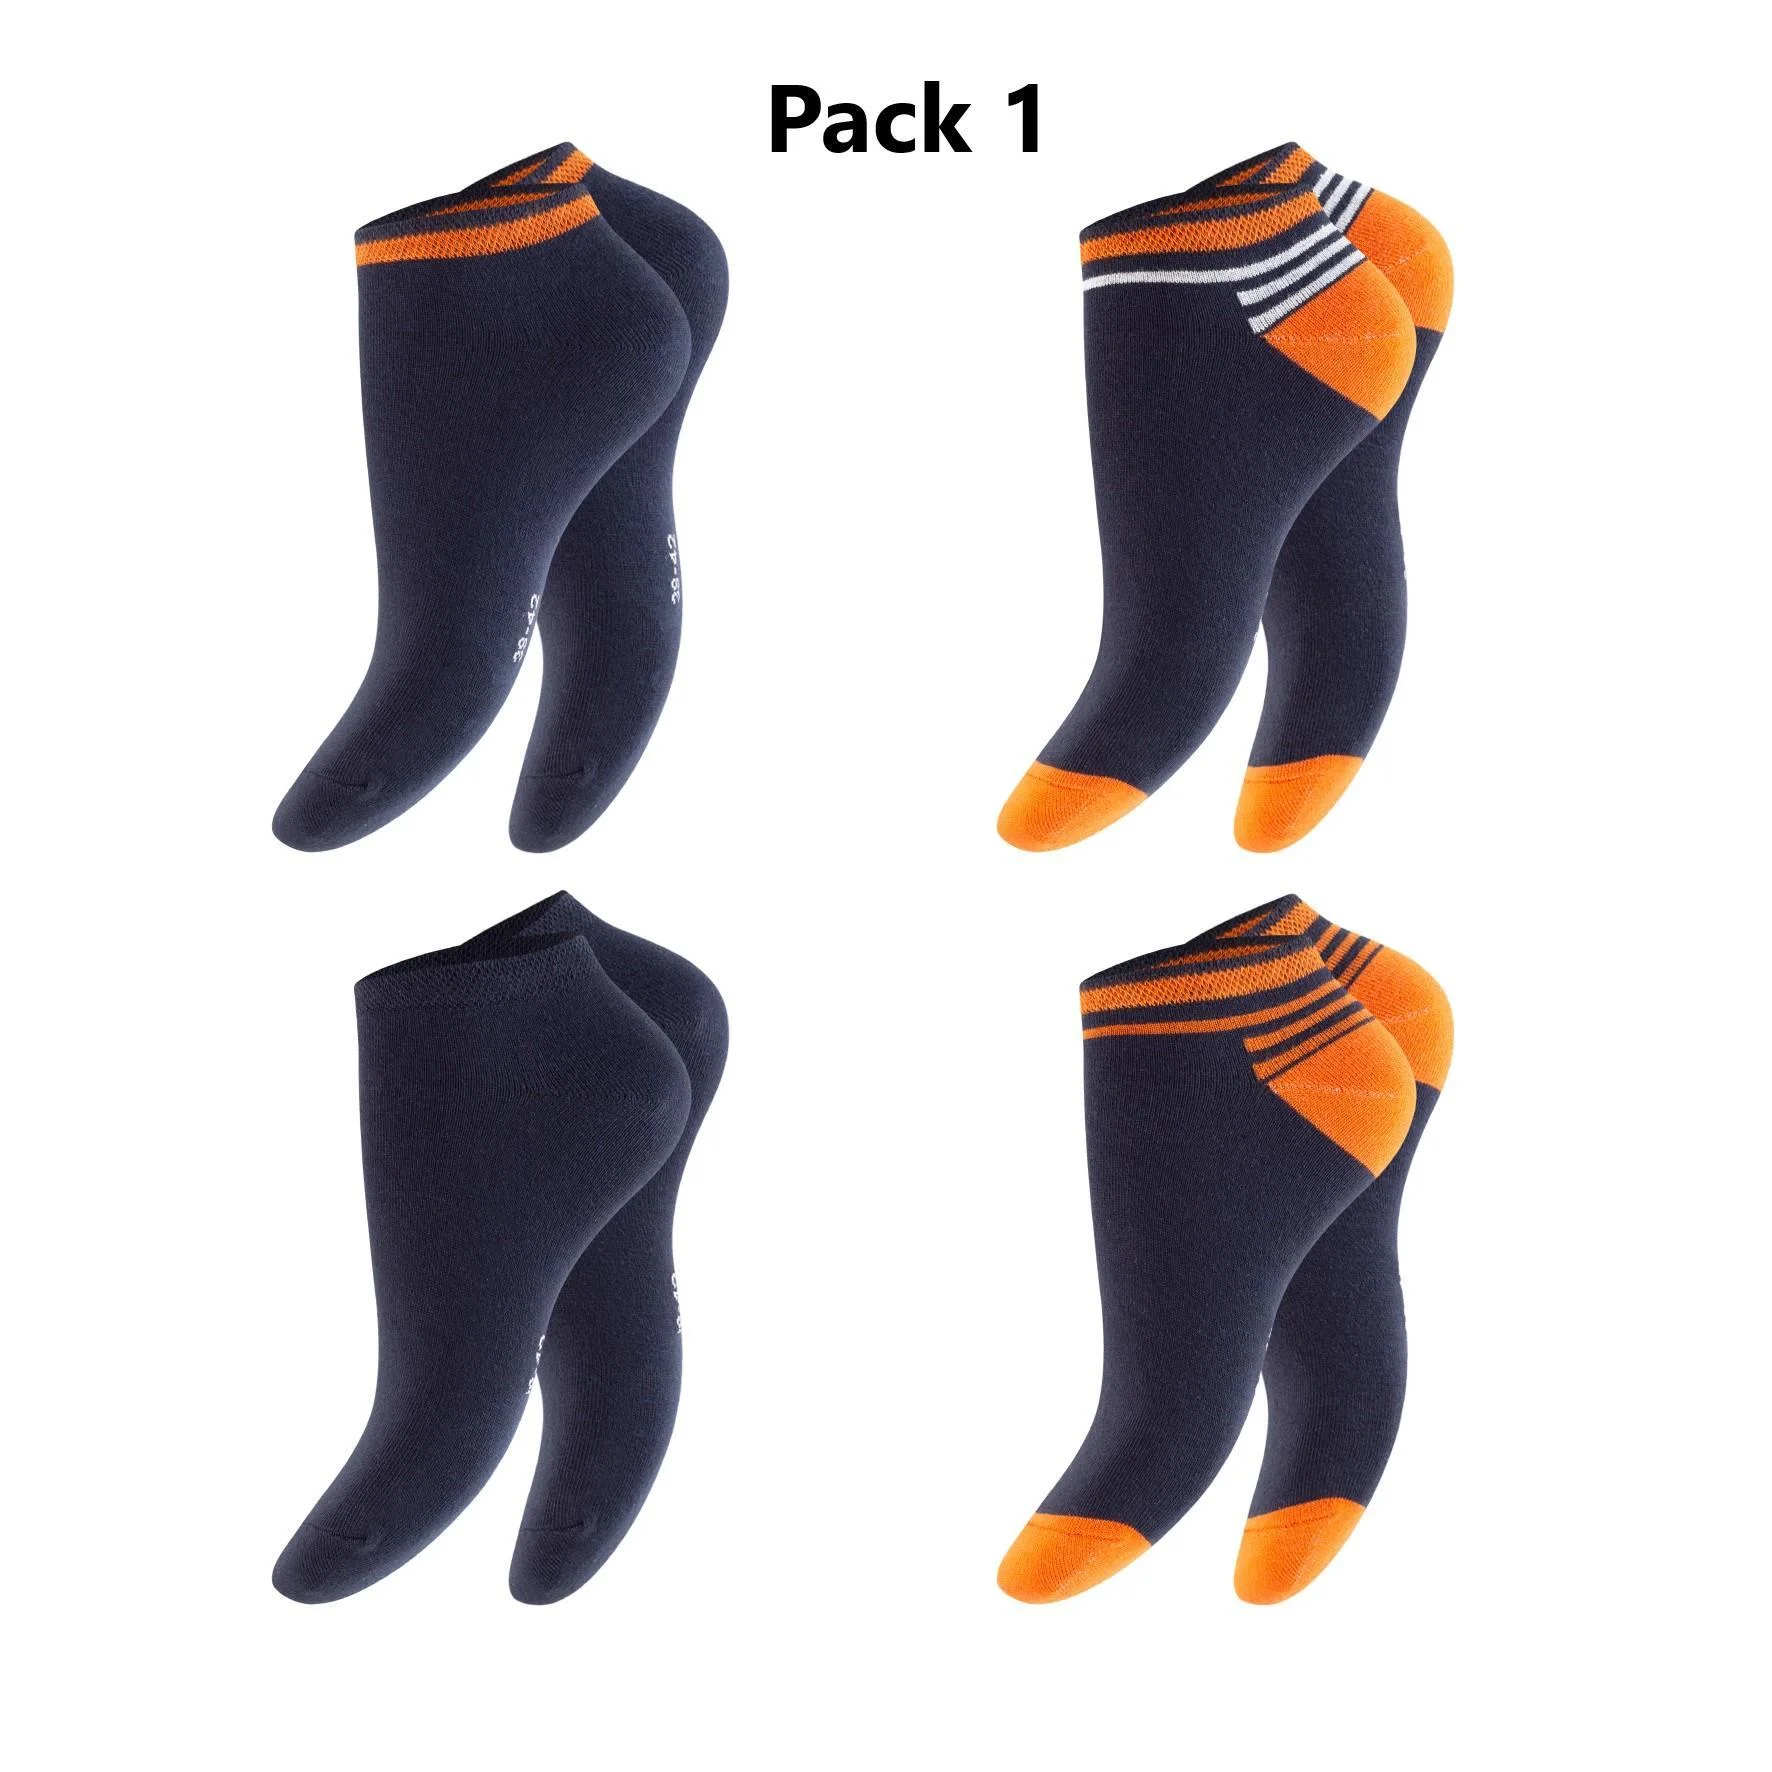 Herren Sneaker-Socken 79508 ,Pack 1, Gr. 39/42, farbig gem., 4er-Pack